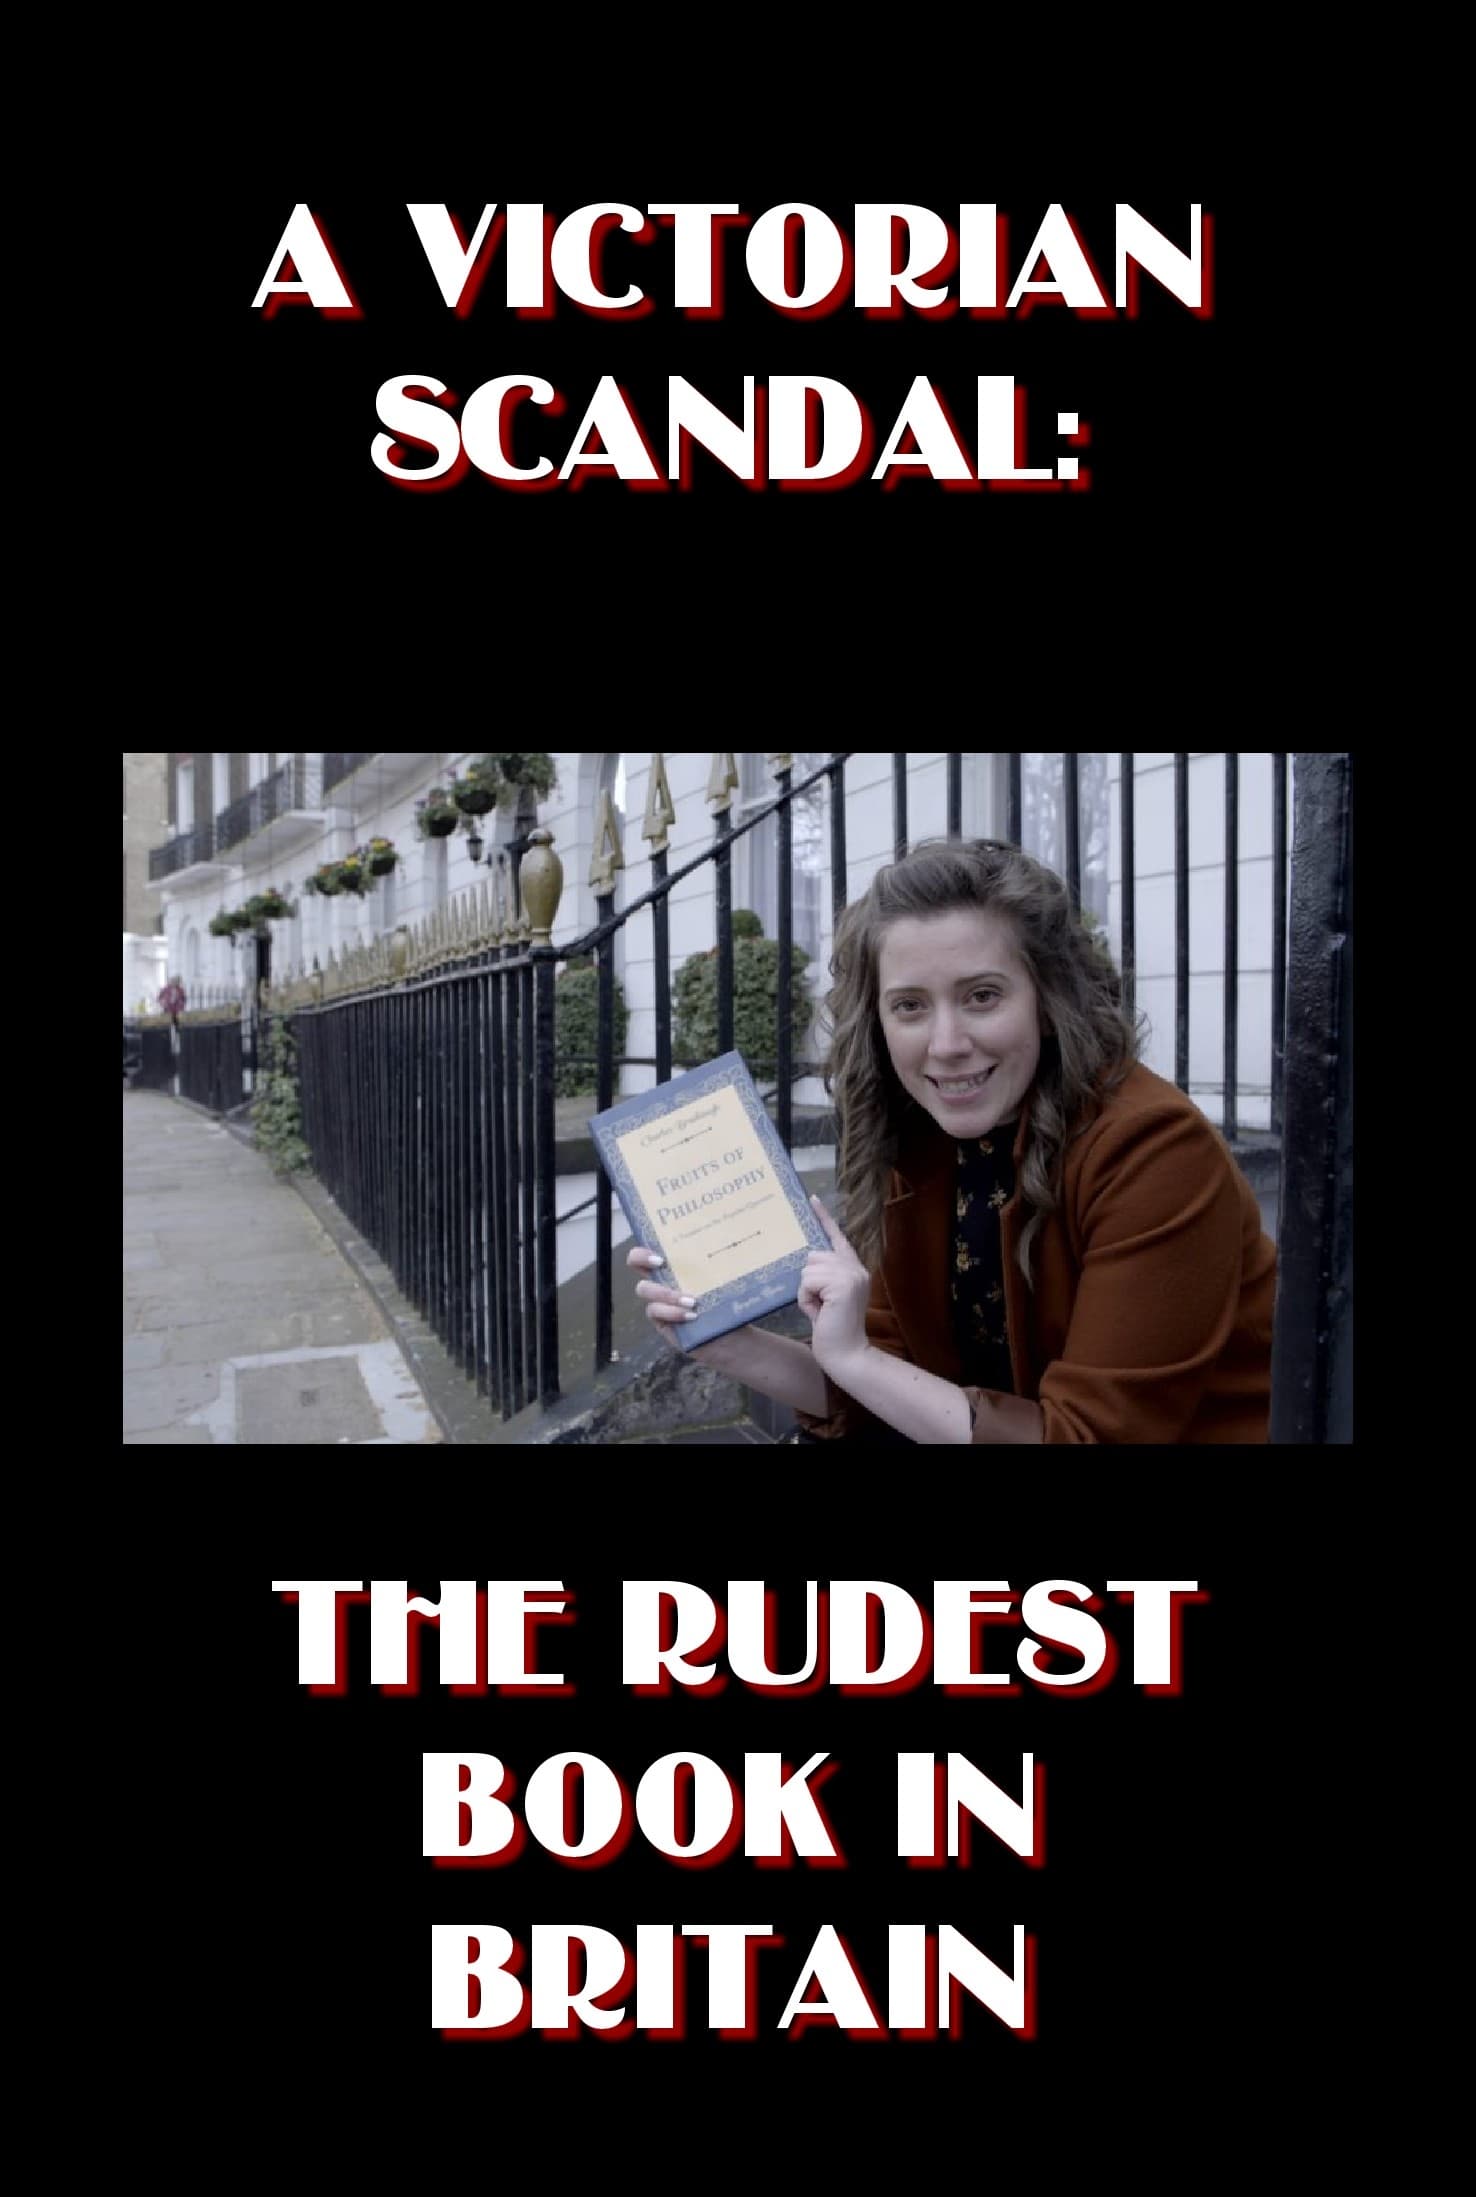 A Victorian Scandal: The Rudest Book in Britain